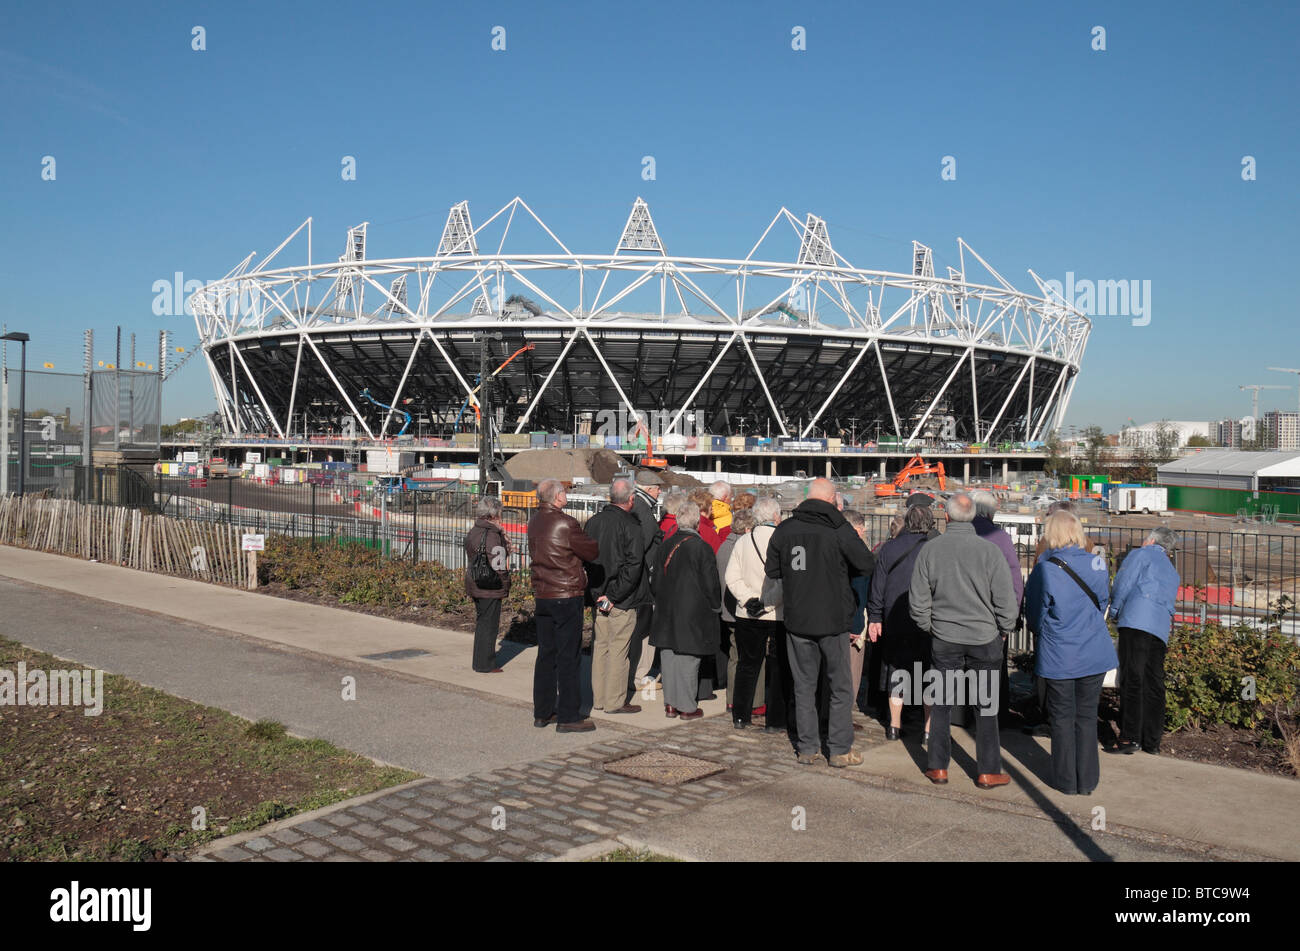 Besucher sehen die teilweise gebauten London 2012 Olympischen Leichtathletik-Stadion, East London, UK.  Okt 2010 Stockfoto